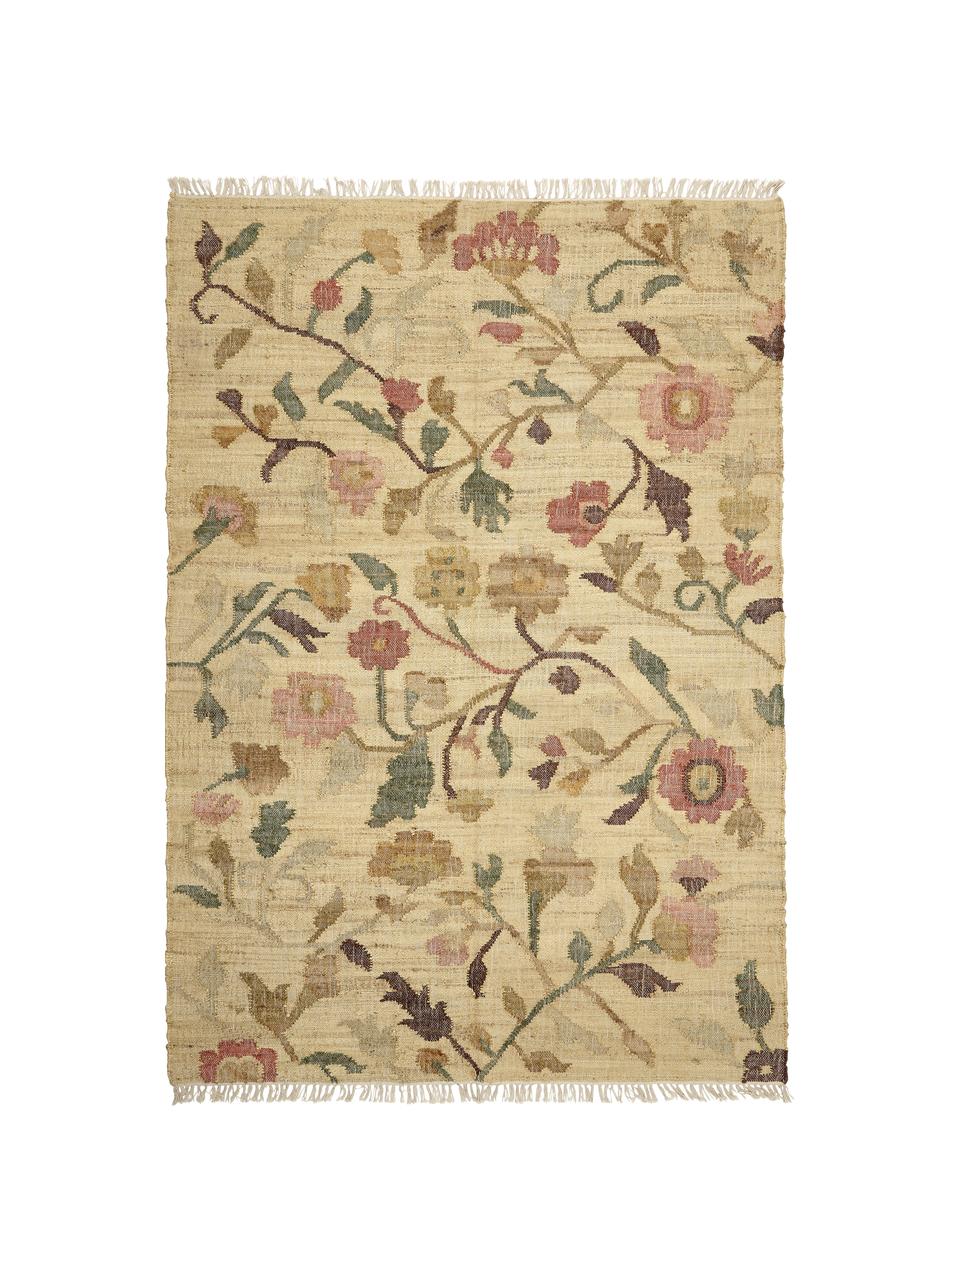 Jutový koberec s třásněmi Flora, 100% juta, Béžová, více barev, Š 200 cm, D 300 cm (velikost L)